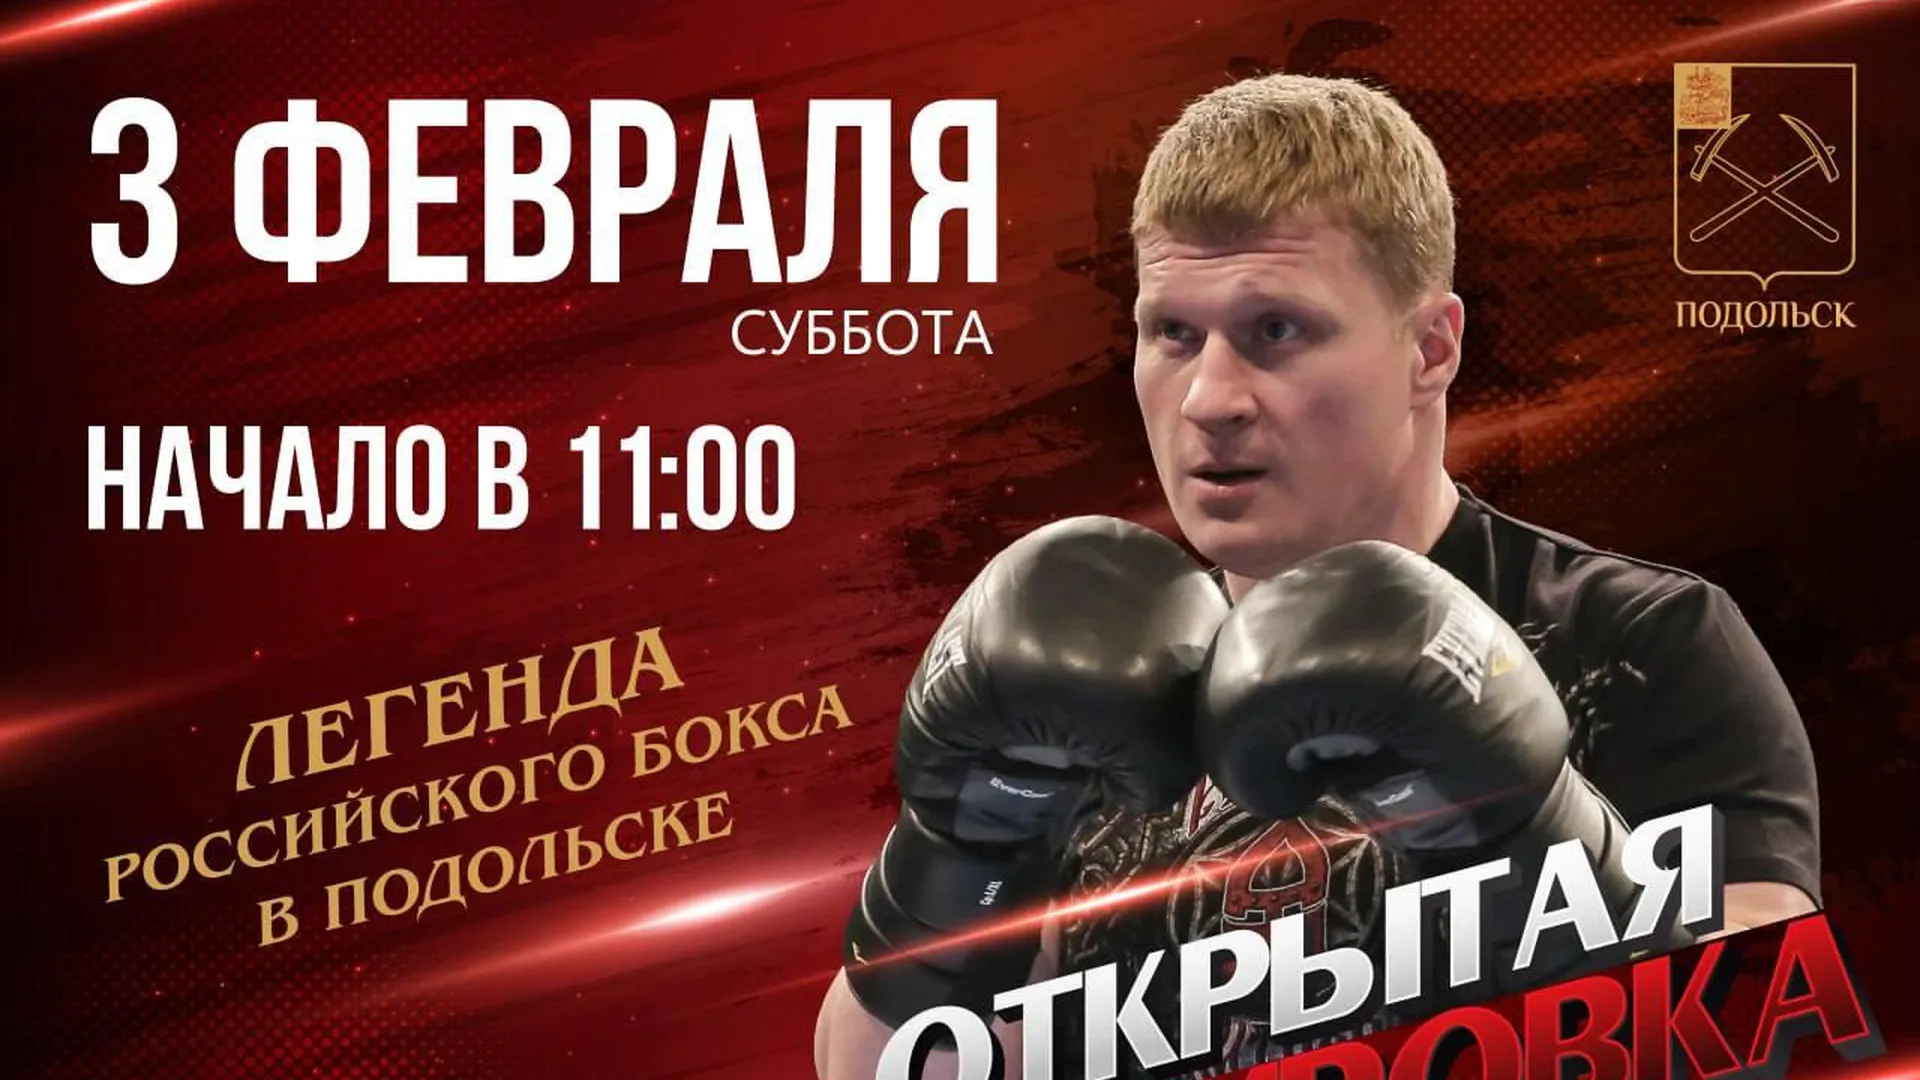 Российский боксер Поветкин проведет тренировку для юных спортсменов Подольска 3 февраля